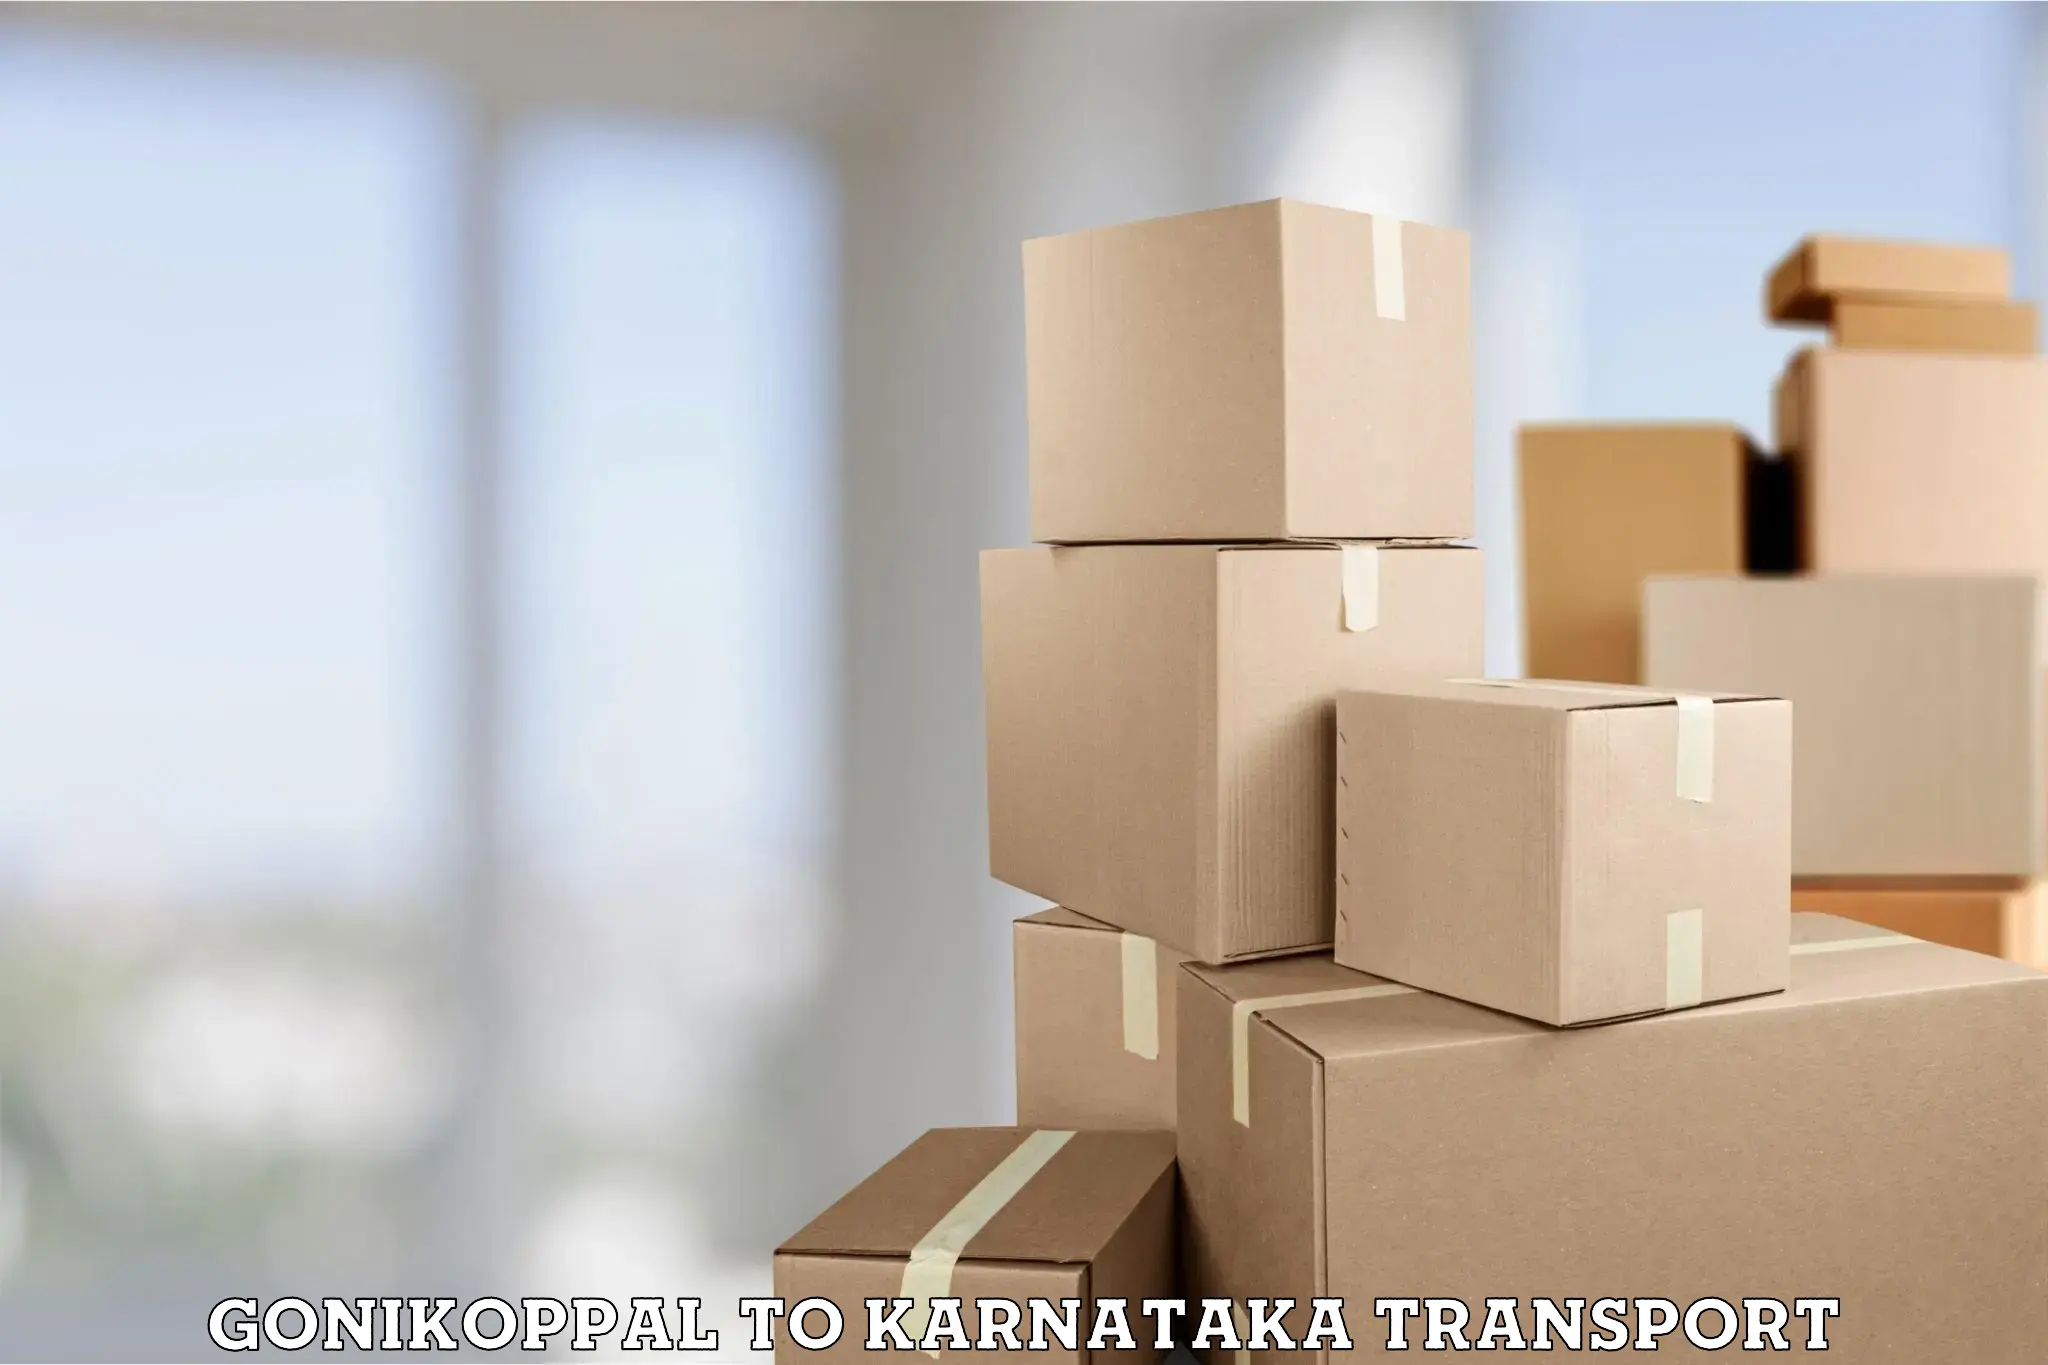 Vehicle parcel service Gonikoppal to Yenepoya Mangalore